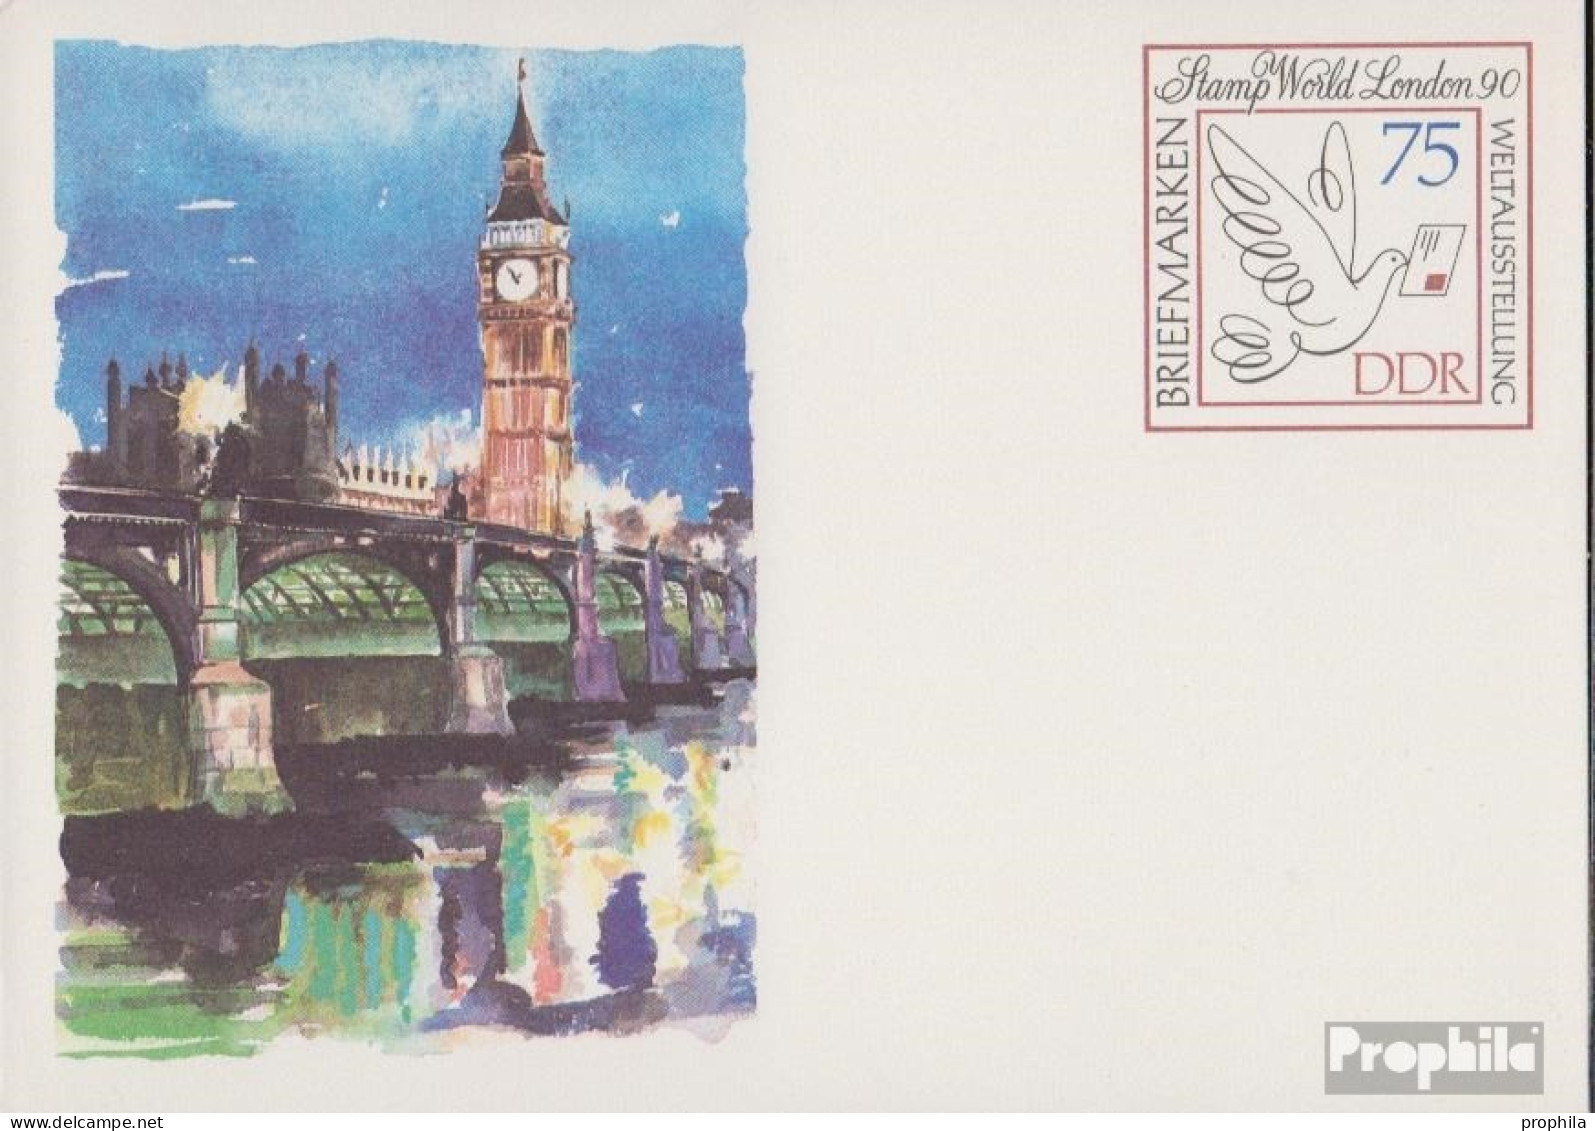 DDR P105 Amtliche Postkarte Gefälligkeitsgestempelt Gebraucht 1990 Stamp World - Cartes Postales - Oblitérées